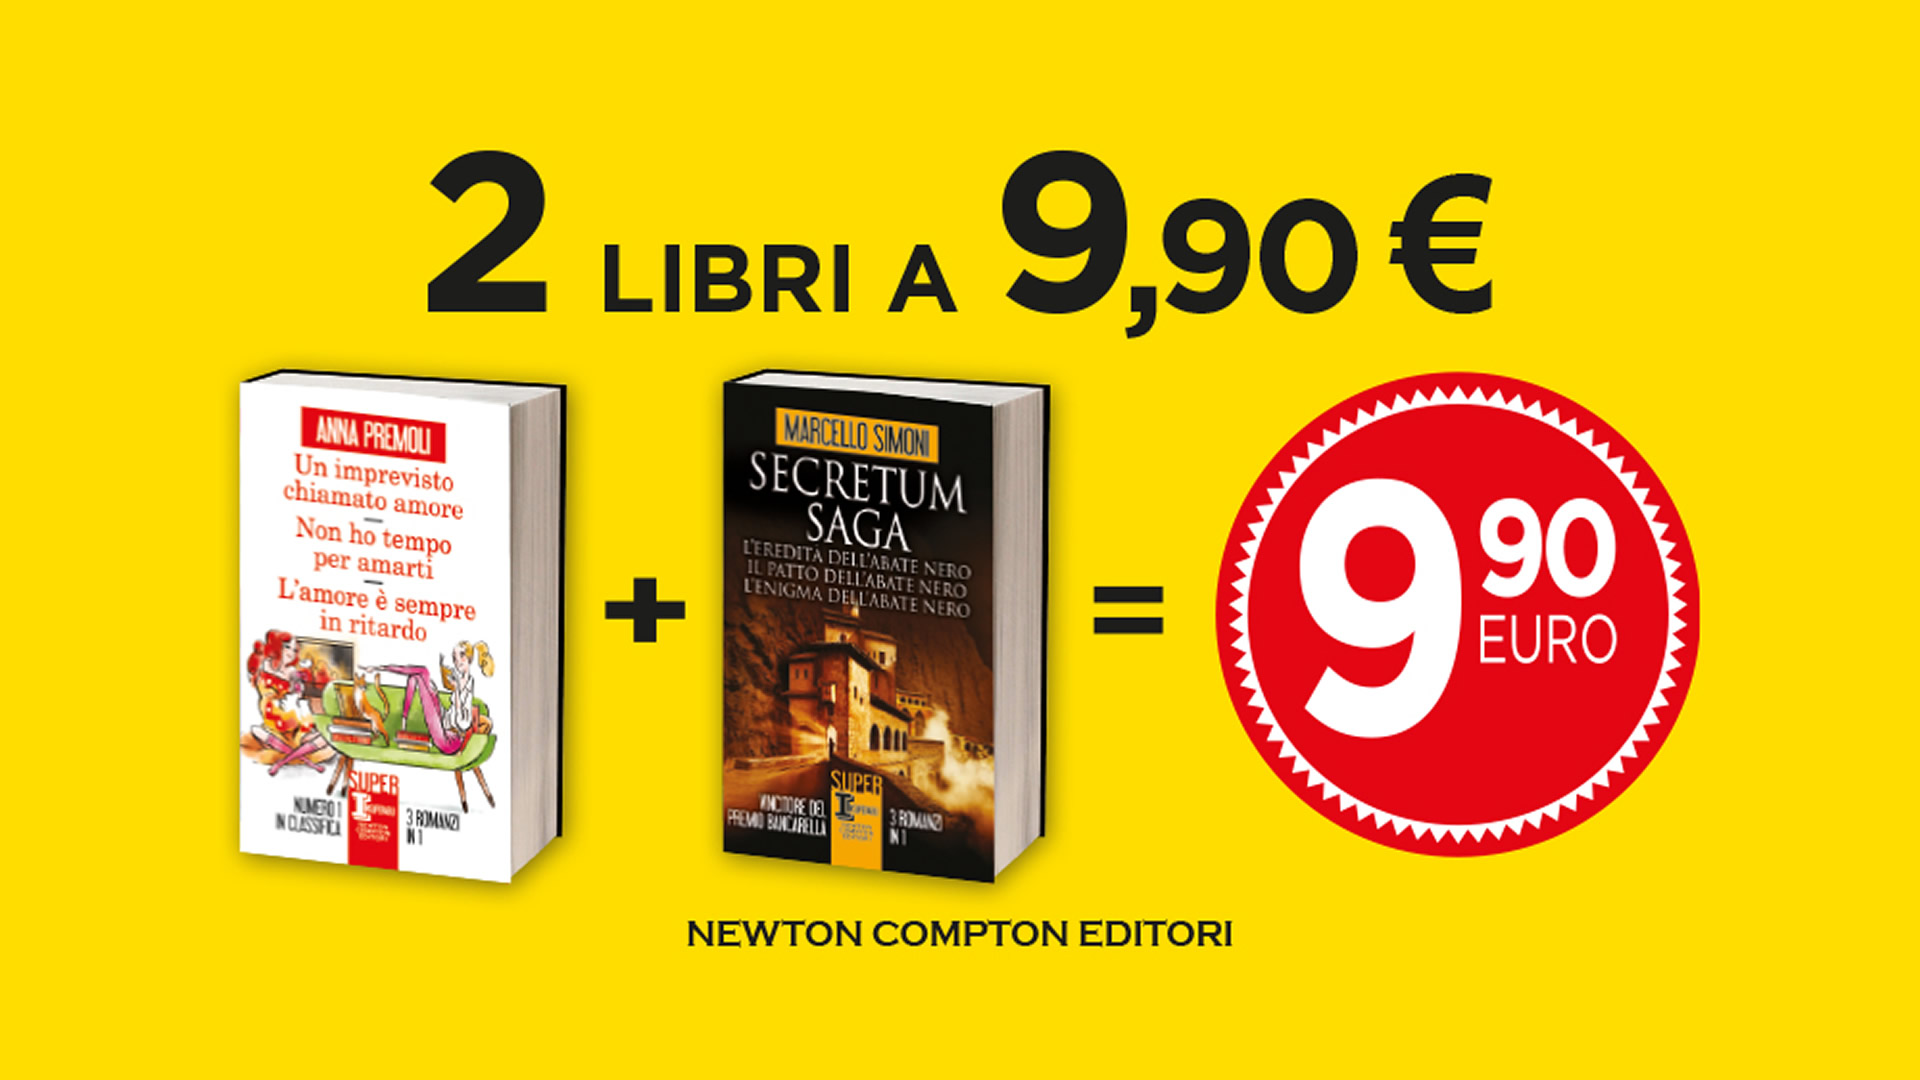 Ven.Pr.Ed. Srl, Promo 1+1 Newton Compton Editori: 2 libri a €9,90!